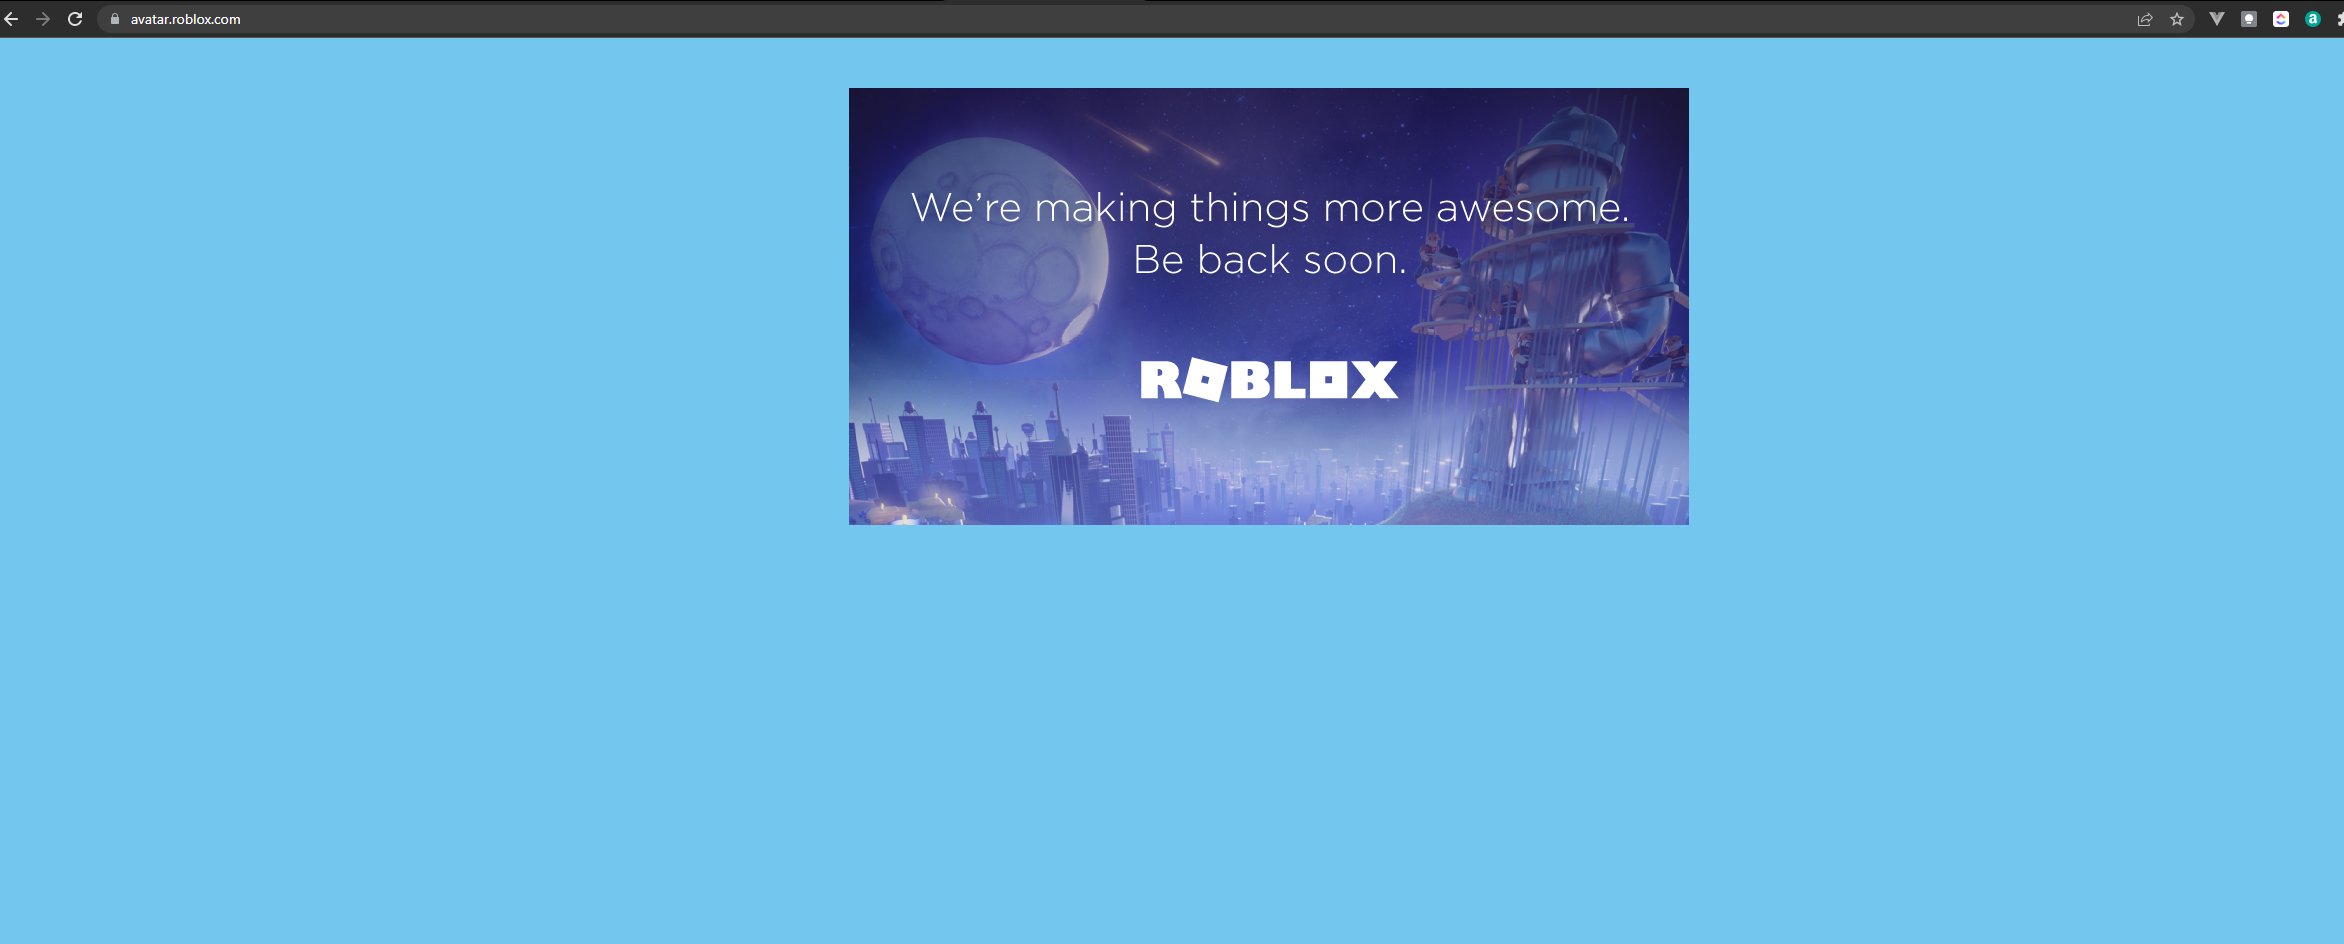 Đây chắc chắn là một trong những tin tức tuyệt vời nhất cho các game thủ yêu thích Roblox. Với ít nhất một API cho avatar, bạn có thể dễ dàng tùy chỉnh và thiết kế trang phục theo ý thích của mình một cách đơn giản và tiện lợi. Hãy điểm danh cùng chúng tôi và đừng quên khám phá thêm những tính năng mới của Roblox nhé!